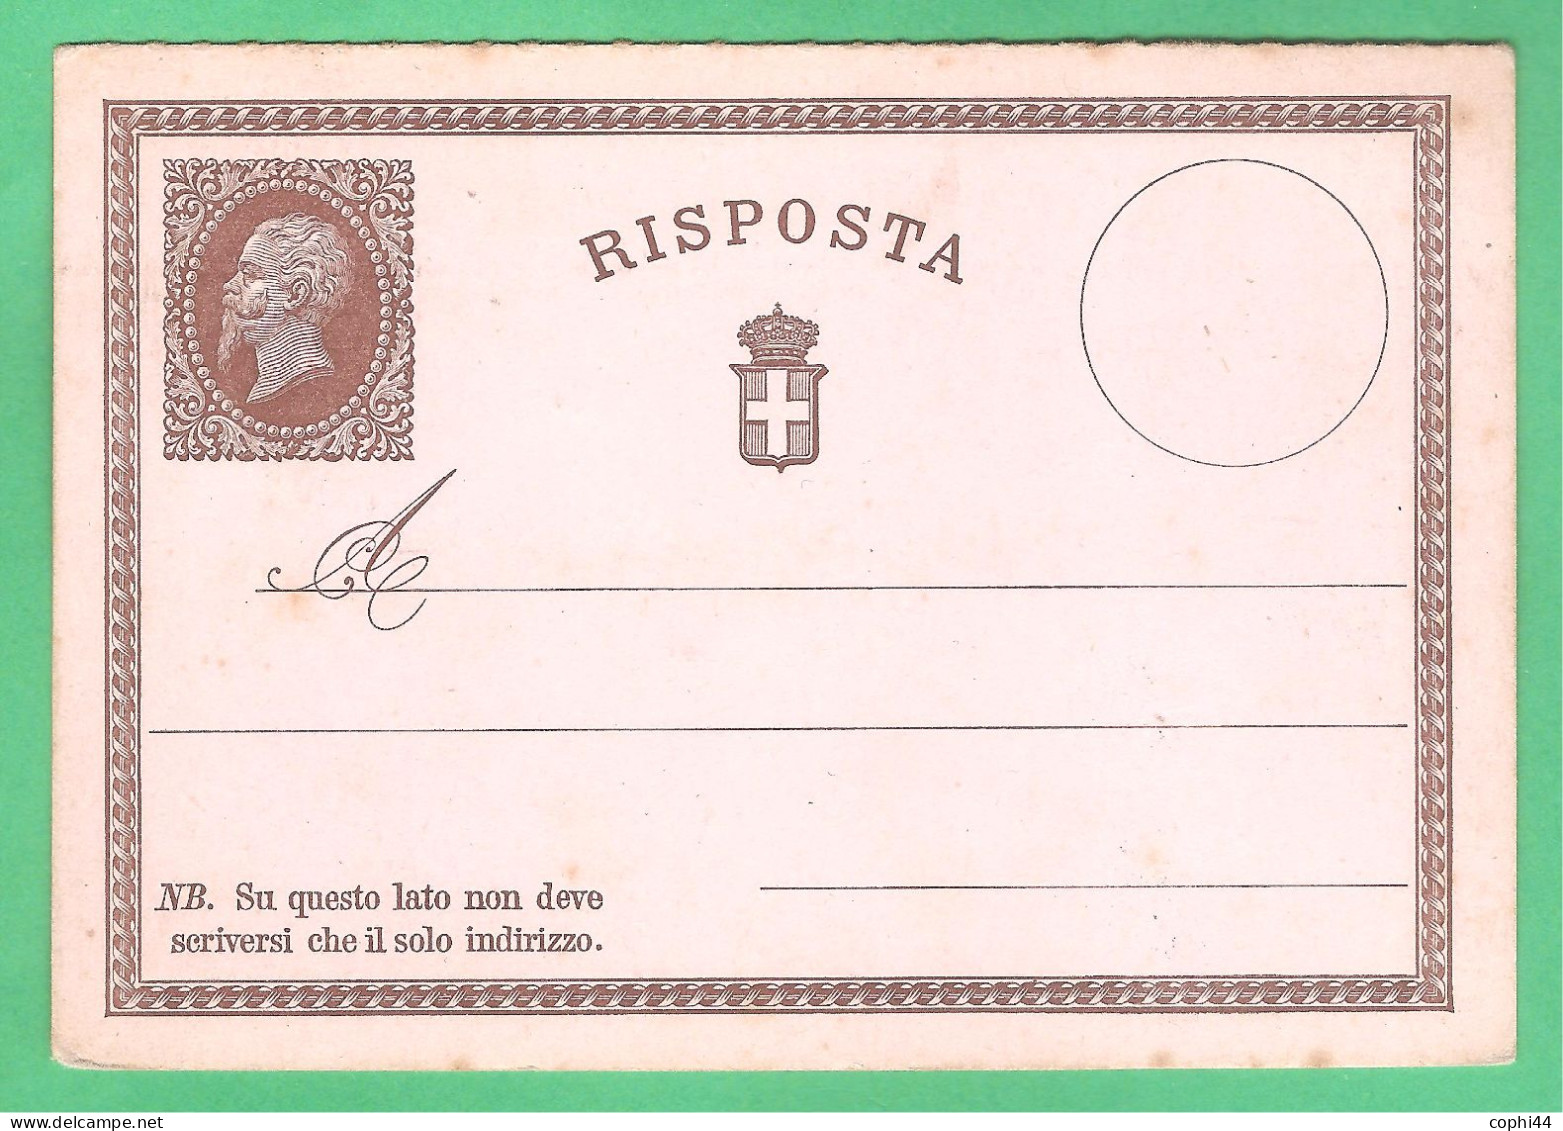 REGNO D'ITALIA 1874 VEII CARTOLINA POSTALE N. 2 C.15+R NUOVA SOLO RISPOSTA SENZA DOMANDA BUONE CONDIZIONI - Stamped Stationery